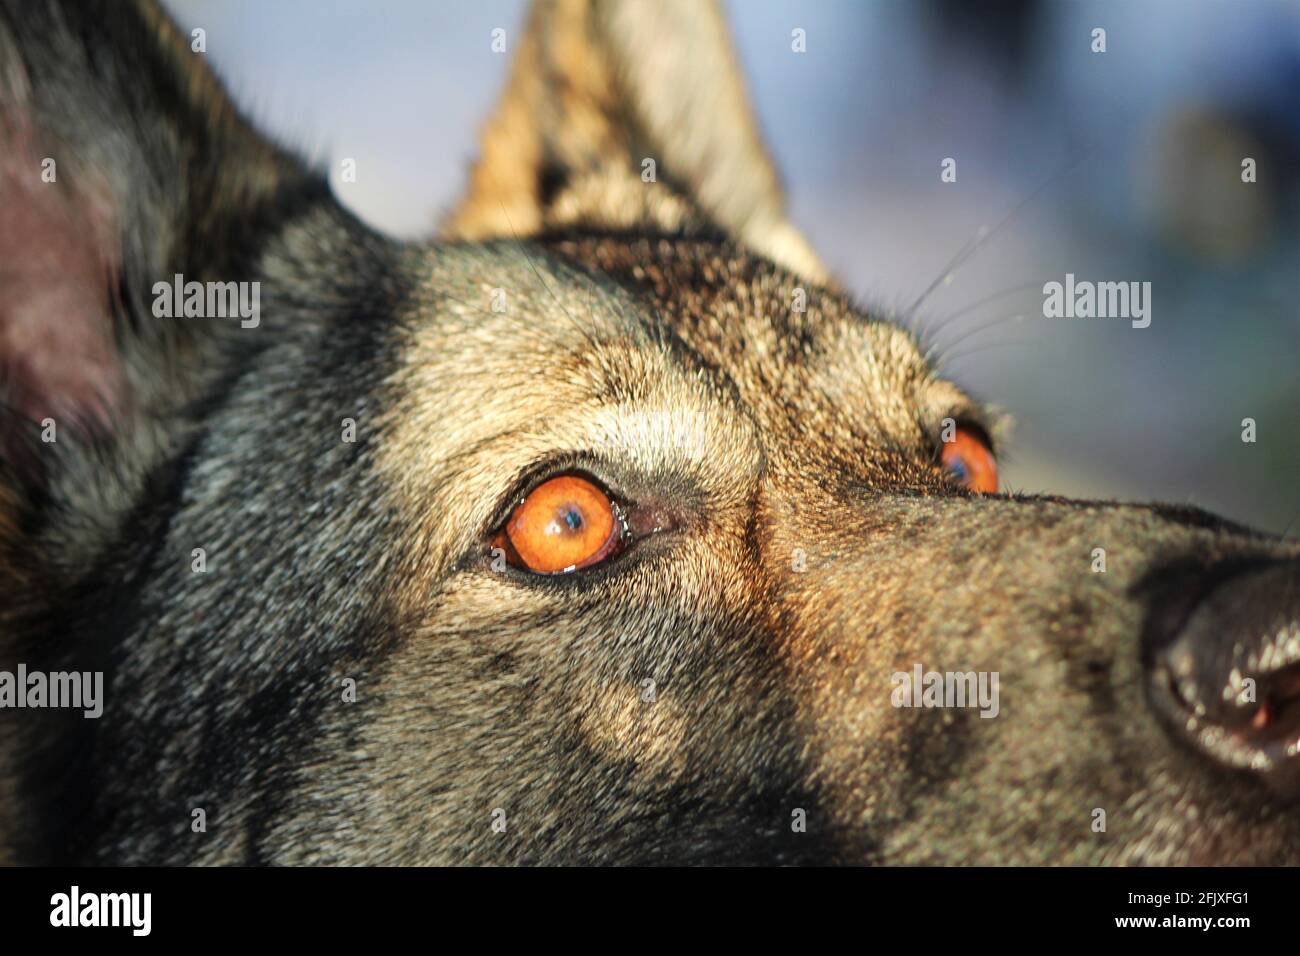 Selective focus on the eyes of a German shepherd dog, macro eye shot Stock Photo